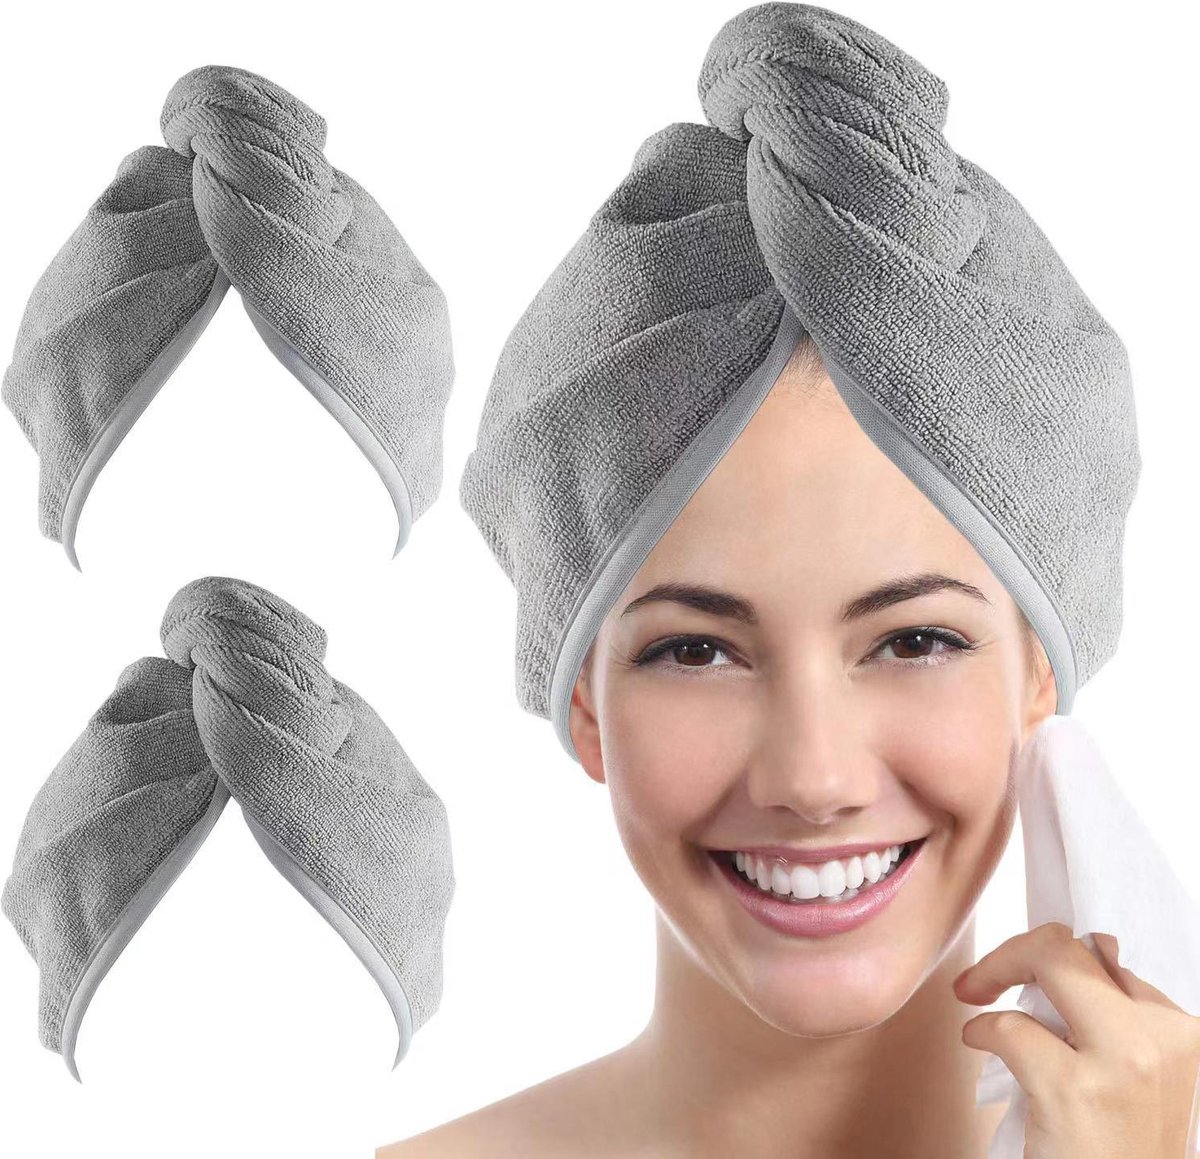 BOTC Sneldrogende Microvezel Haarhanddoek - 2 stuk Hair Towel - Haar Handdoek voor Alle Haartypes - Hair Towel - Haarhanddoek Microvezel - Hoofdhanddoek - Snel Drogend